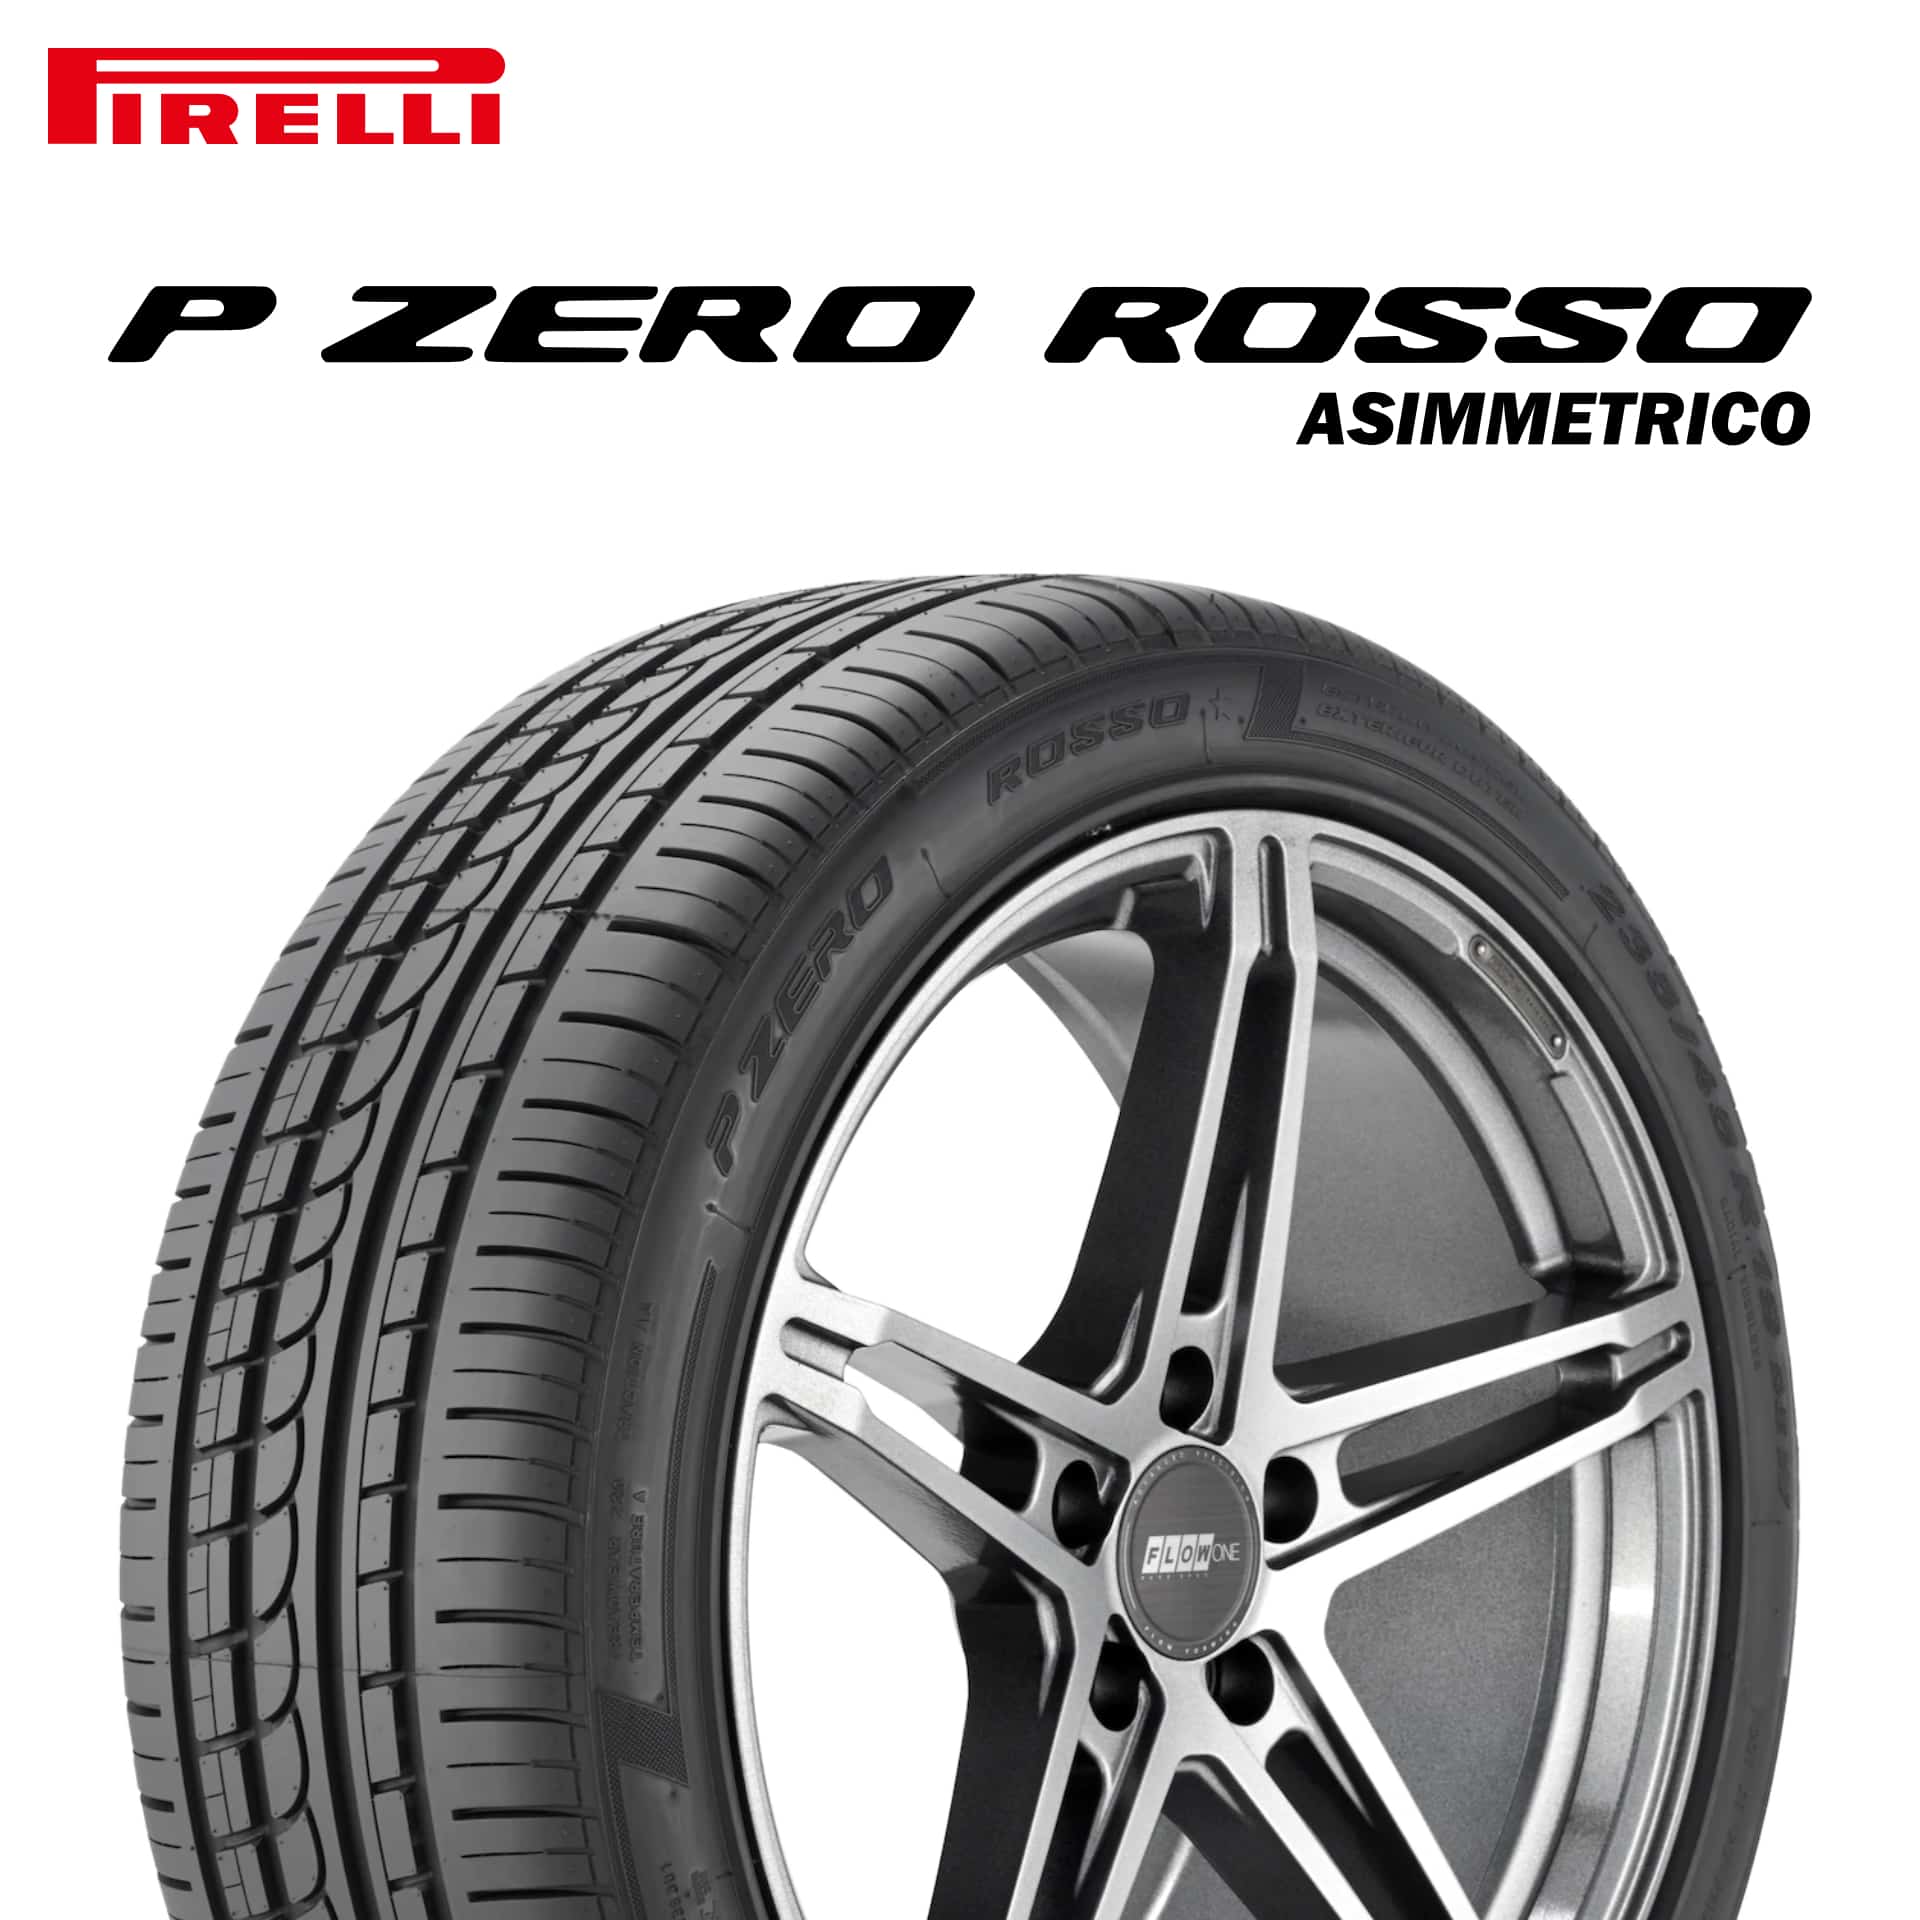 23年製 285/30R18 (93Y) N4 ピレリ P ZERO ROSSO ASIMMETRICO (ピーゼロ ロッソ アシンメトリコ) ポルシェ承認タイヤ 18インチ 新品